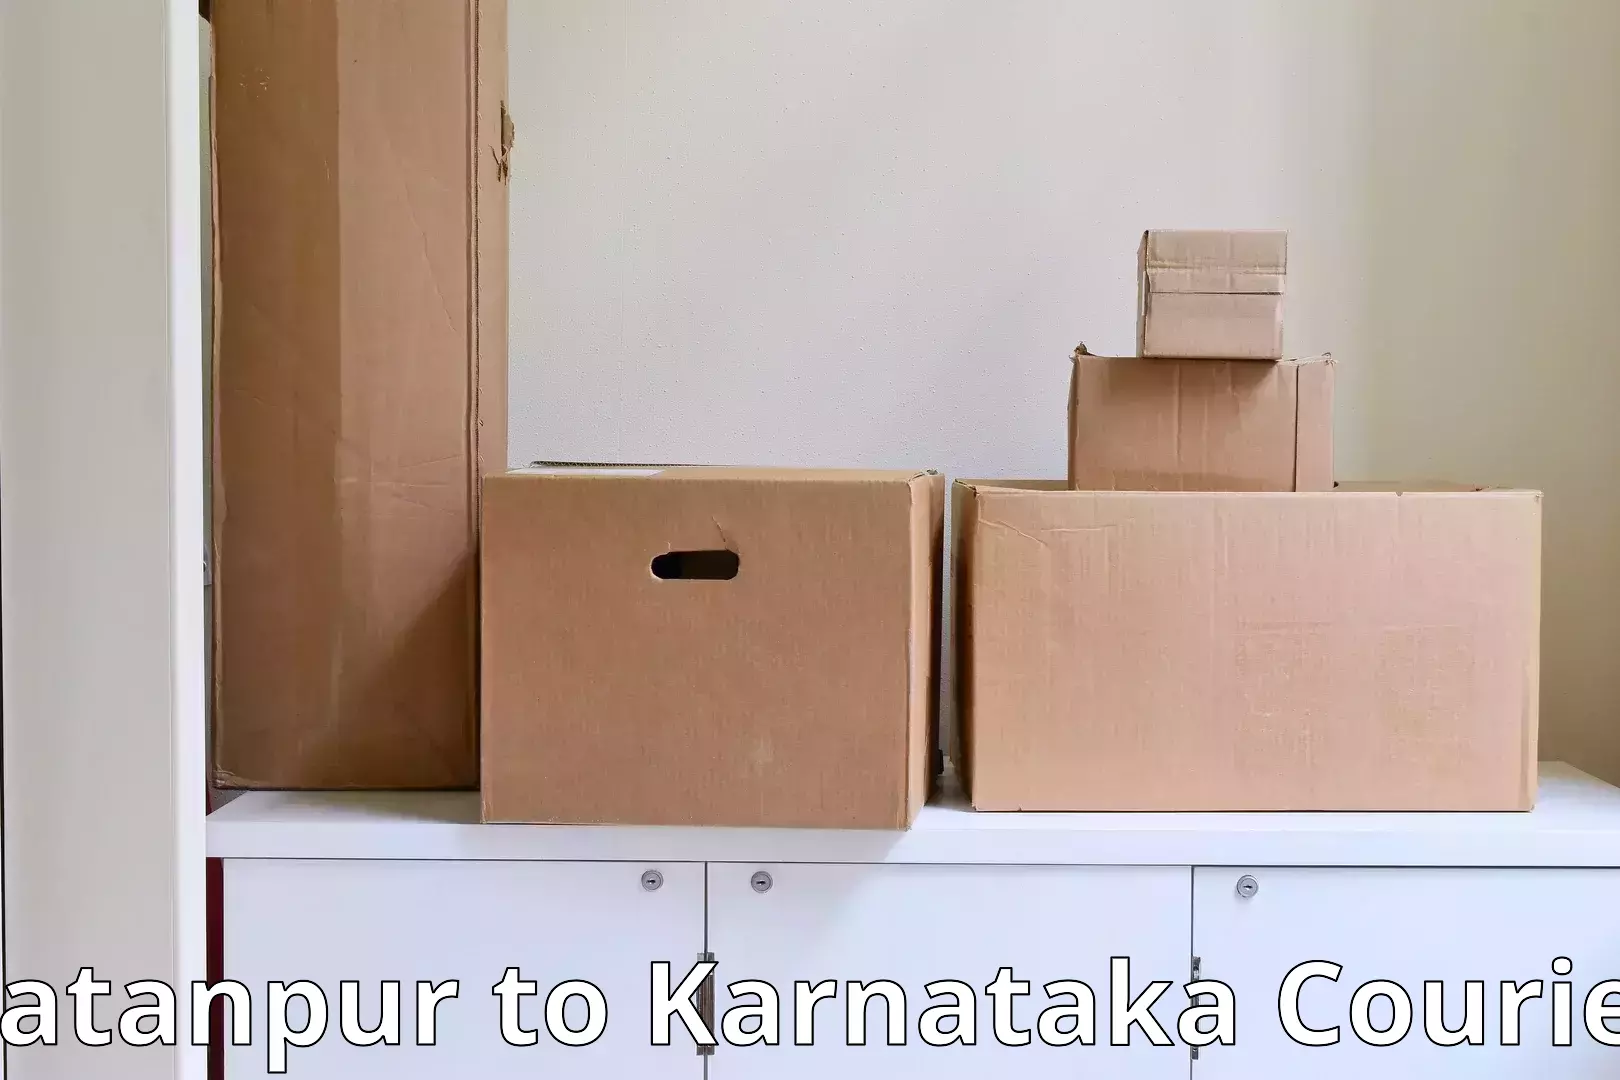 Full-service furniture transport in Ratanpur to Karnataka